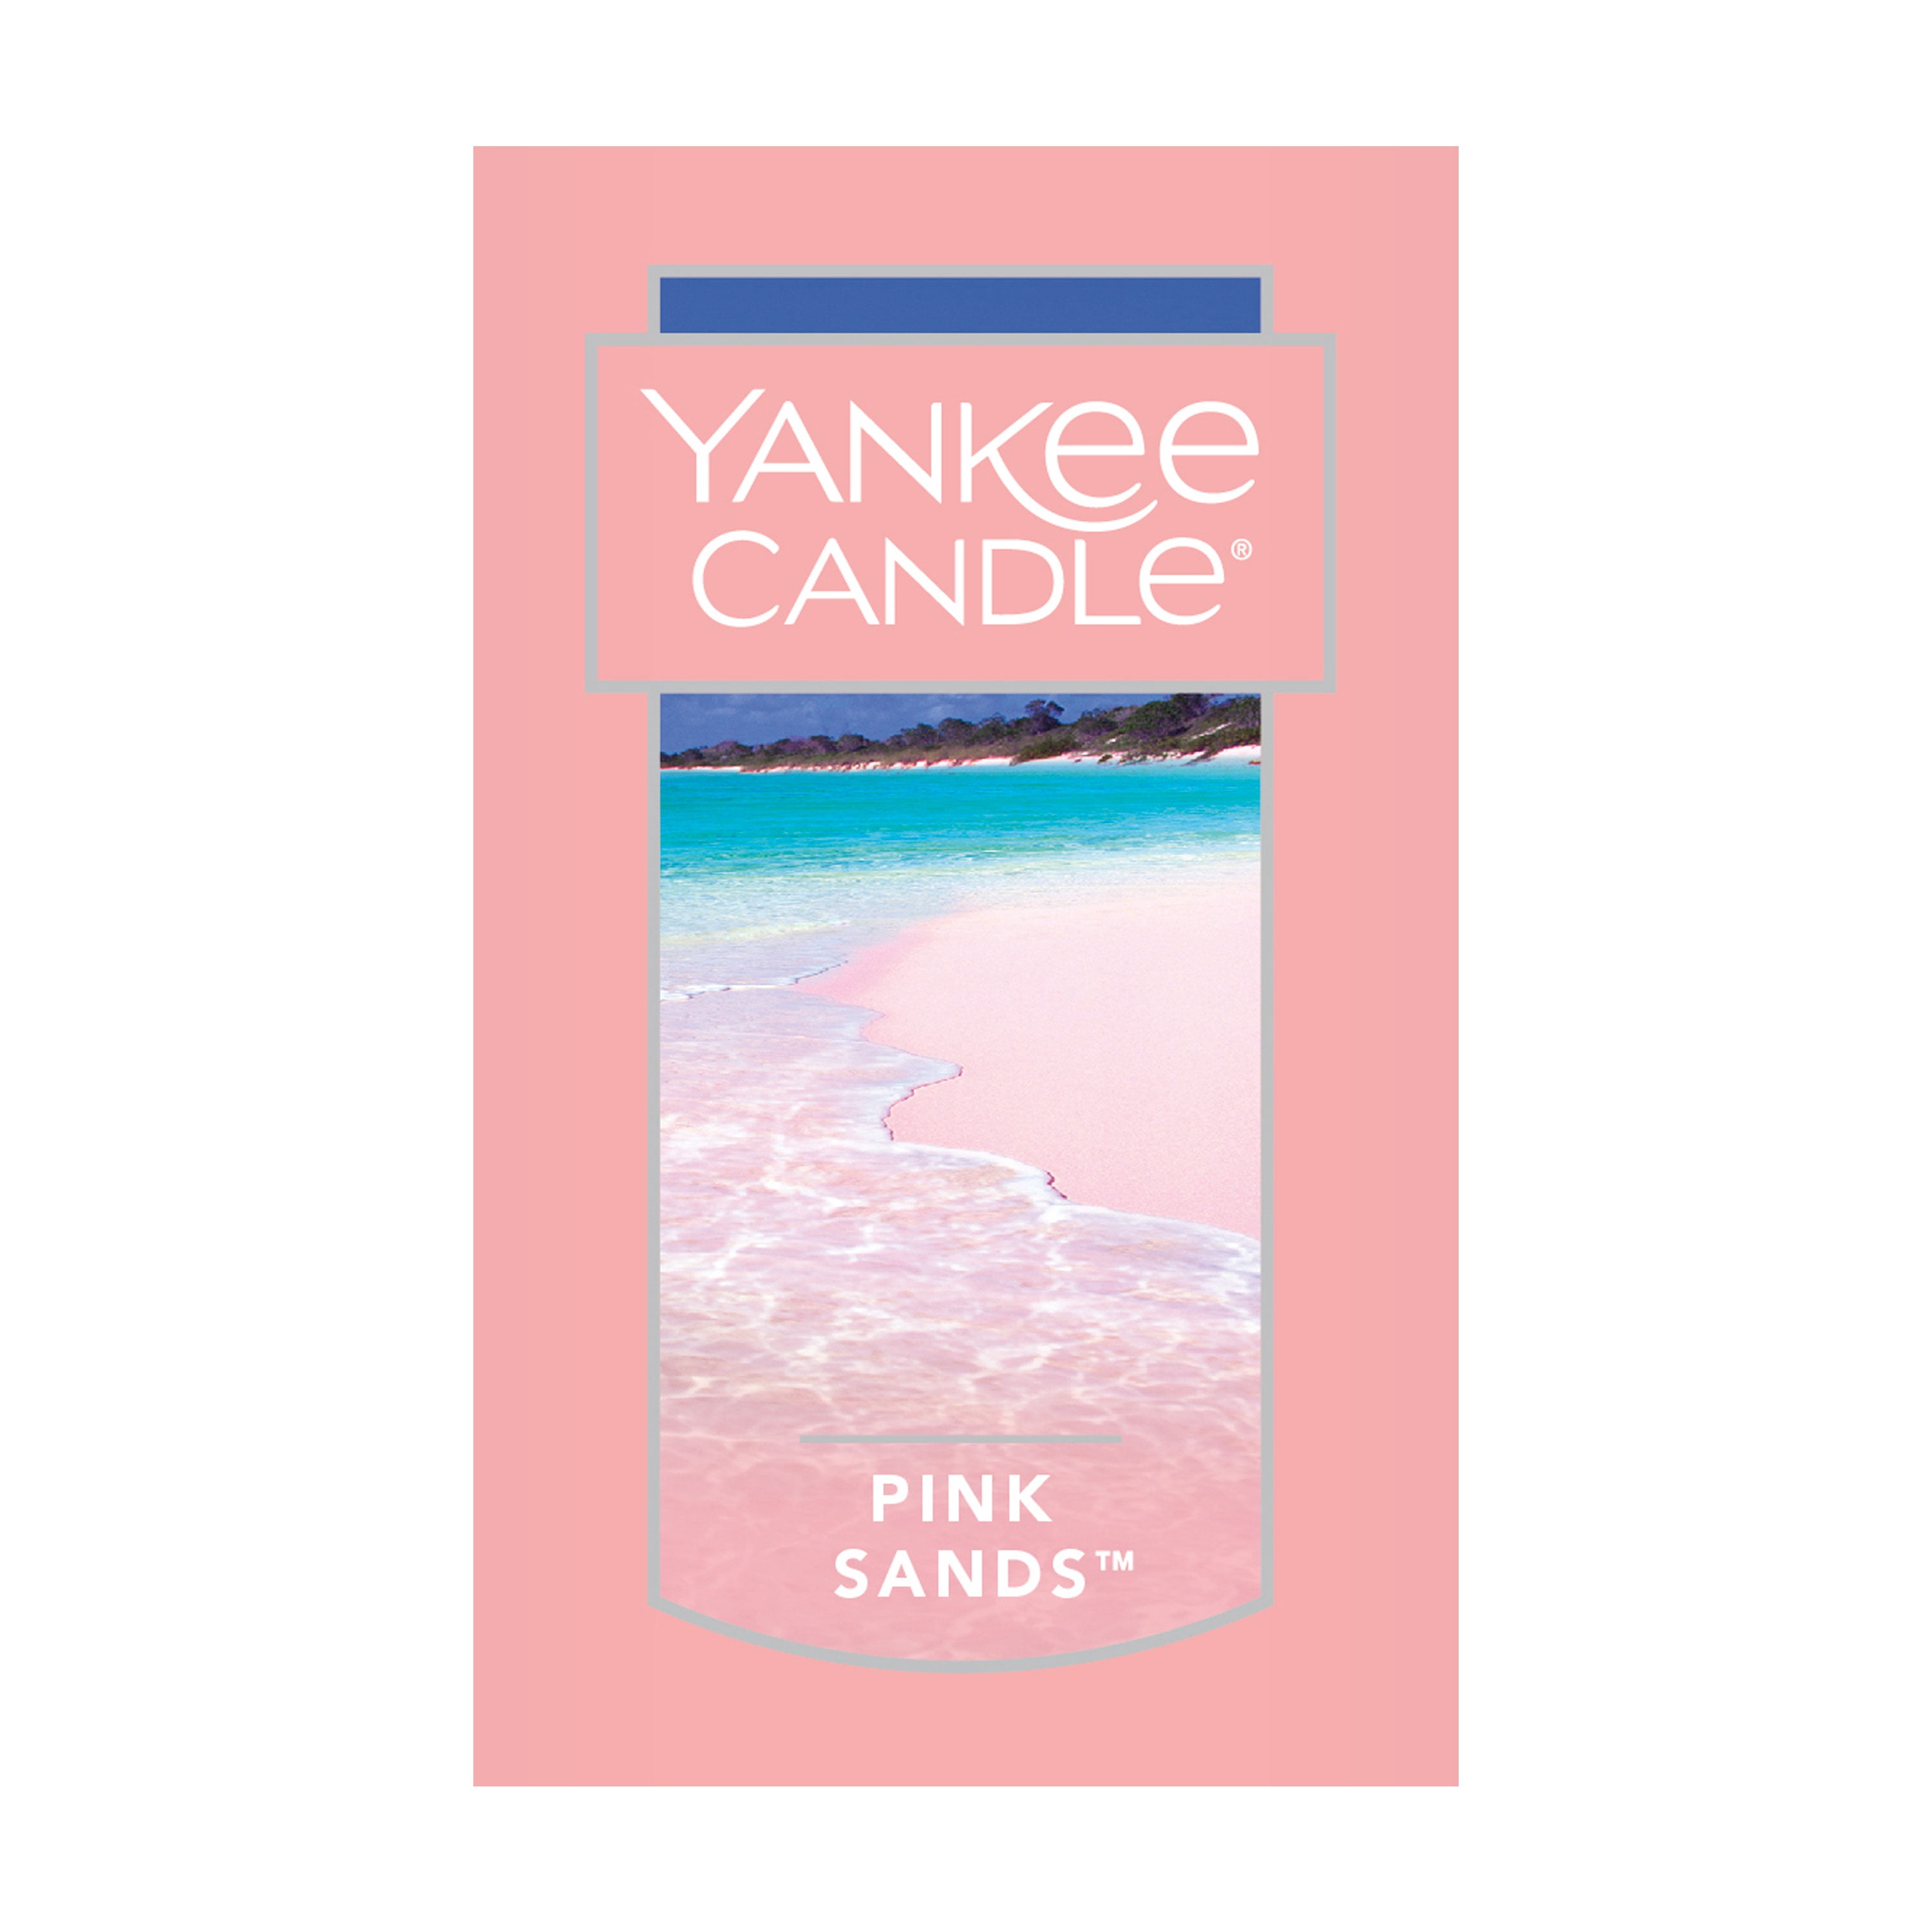 Yankee Candle Raumduft Pink Sands Autofeuerzeug Duft Diffusor